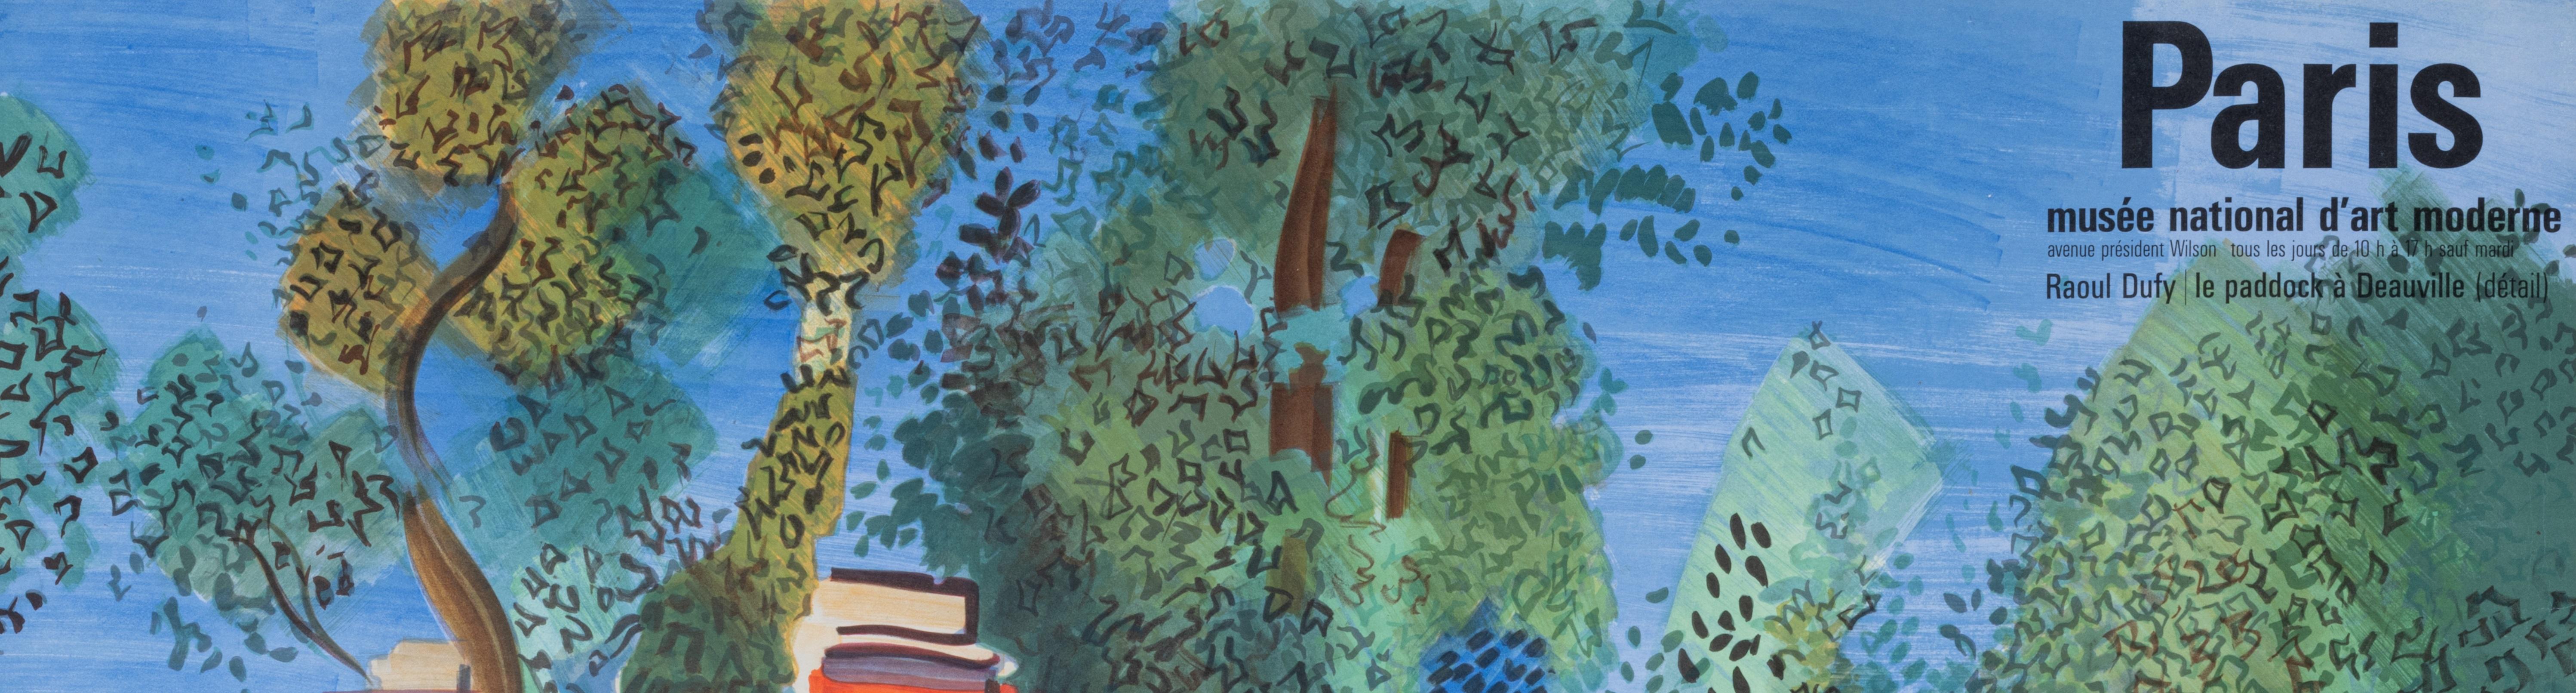 Affiche de 1964 destinée à promouvoir le tourisme à Paris et notamment le Musée d'art moderne qui abrite une grande quantité d'œuvres de Raoul Dufy, entre autres.

Artistics : Raoul Dufy
Titre : Paris - Musée Nationale d'Art Moderne
Date :